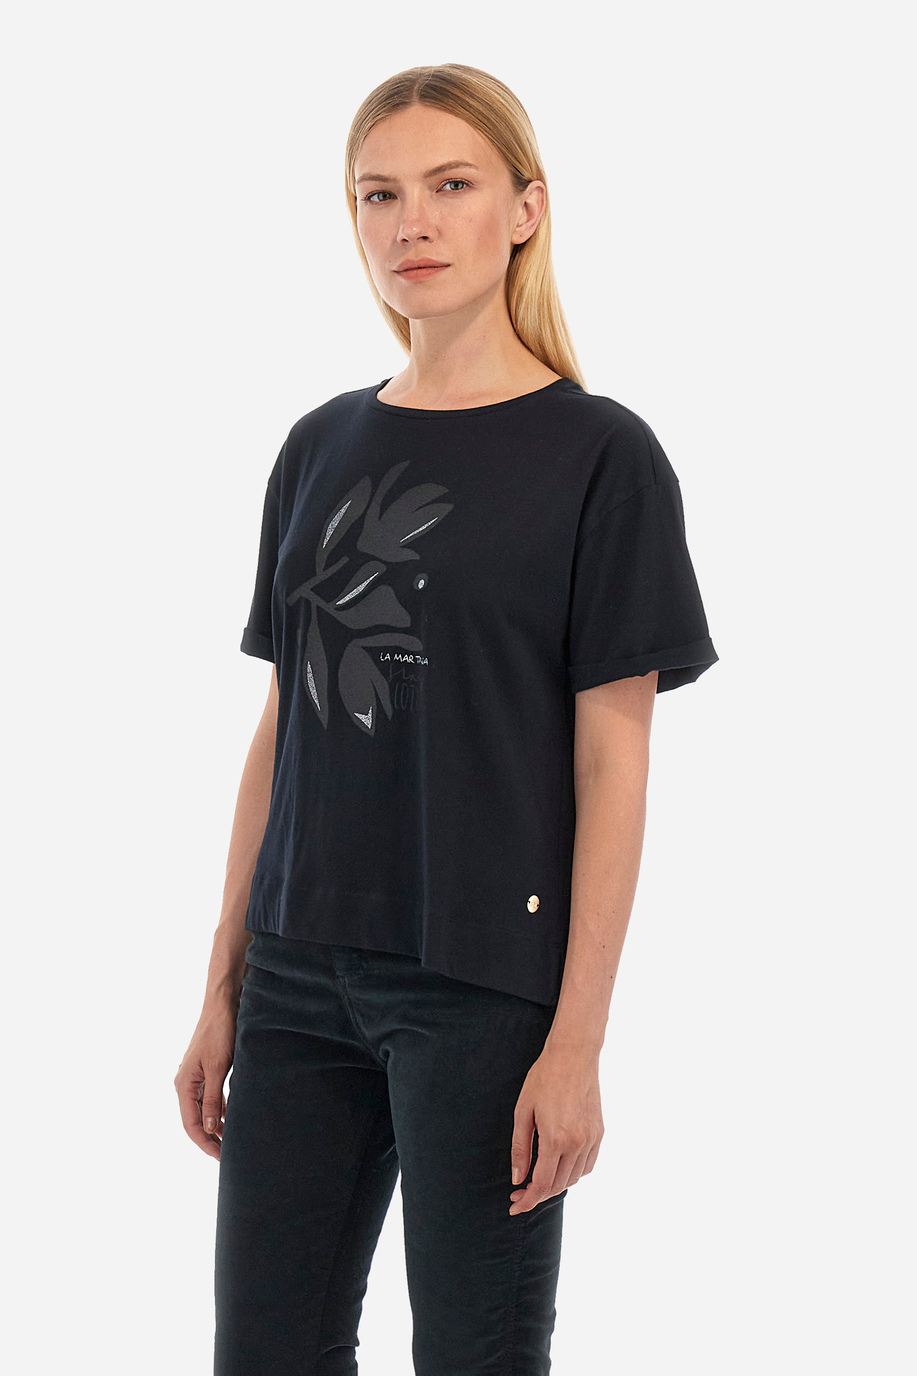 Damen -T -Shirt regular fit - Welda - Kleine Geschenke für sie | La Martina - Official Online Shop